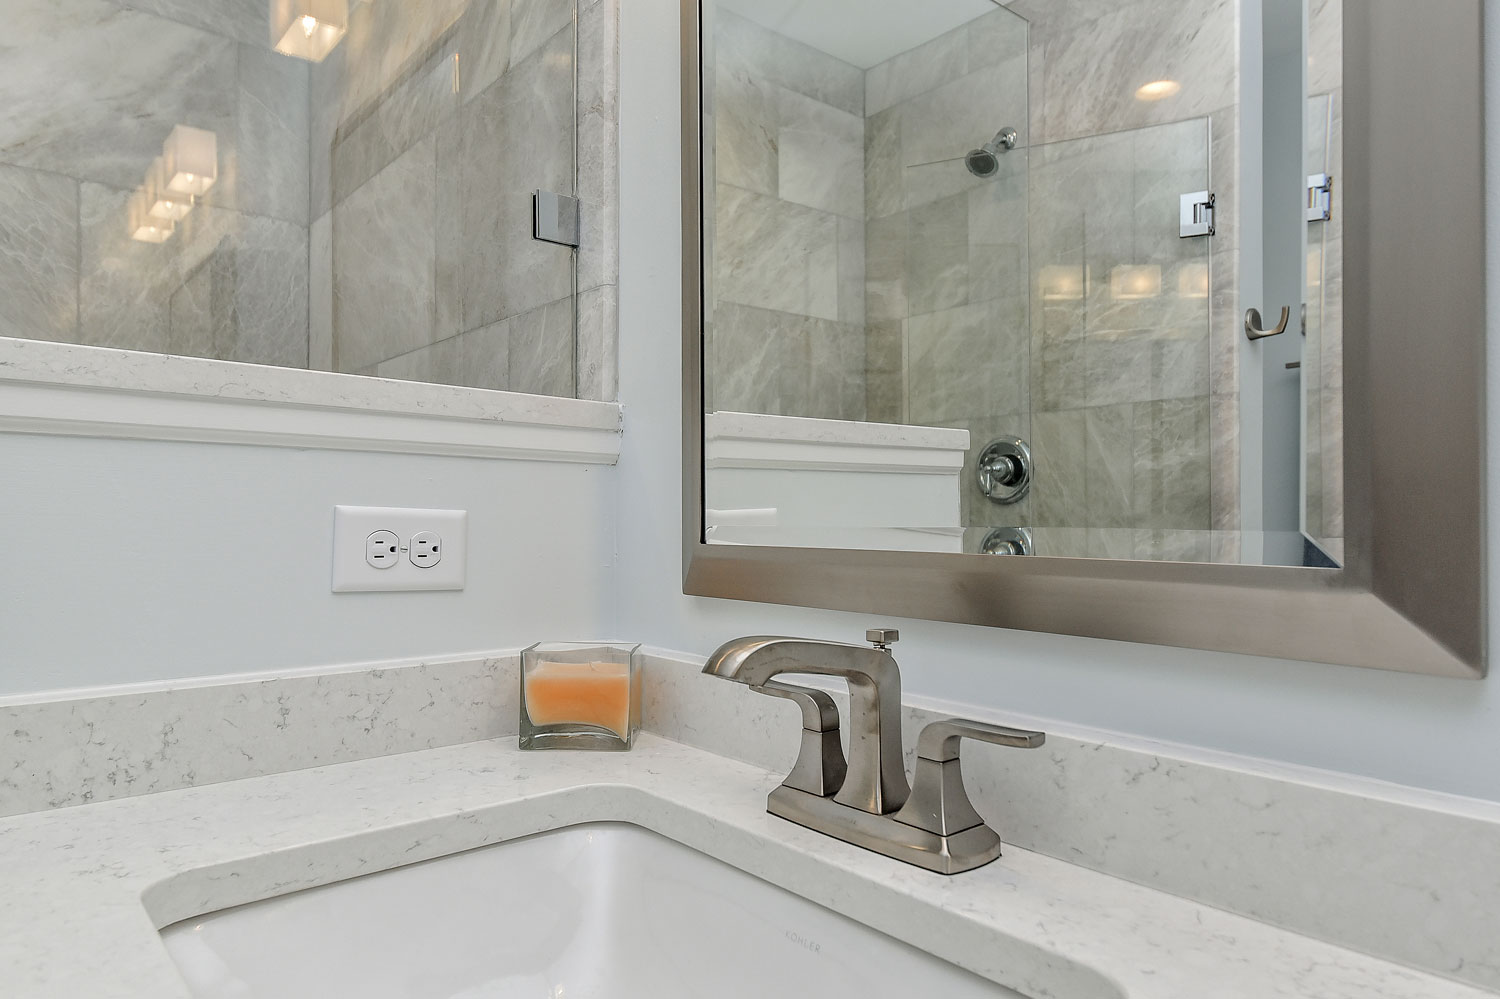 Lisle Master Bathroom Remodel, Quartz, Grey Subway Tile, Walk-in Shower - Sebring Design Build